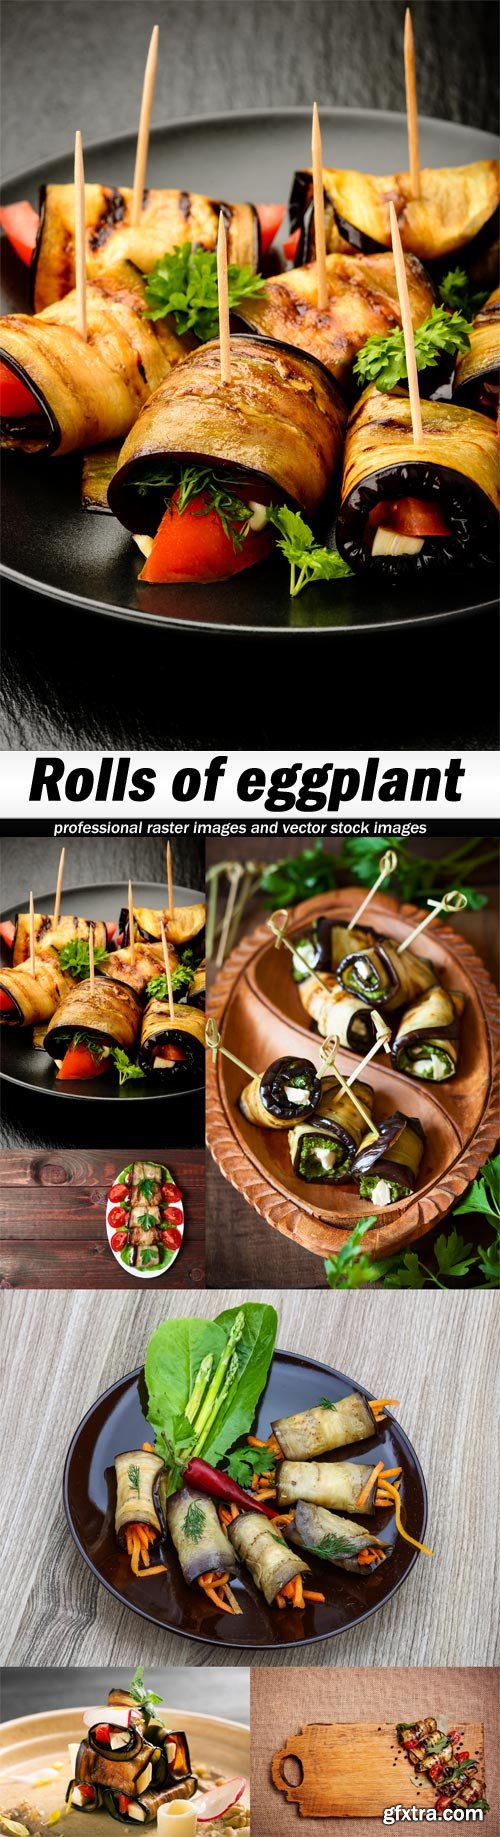 Rolls of eggplant-6xJPEGs